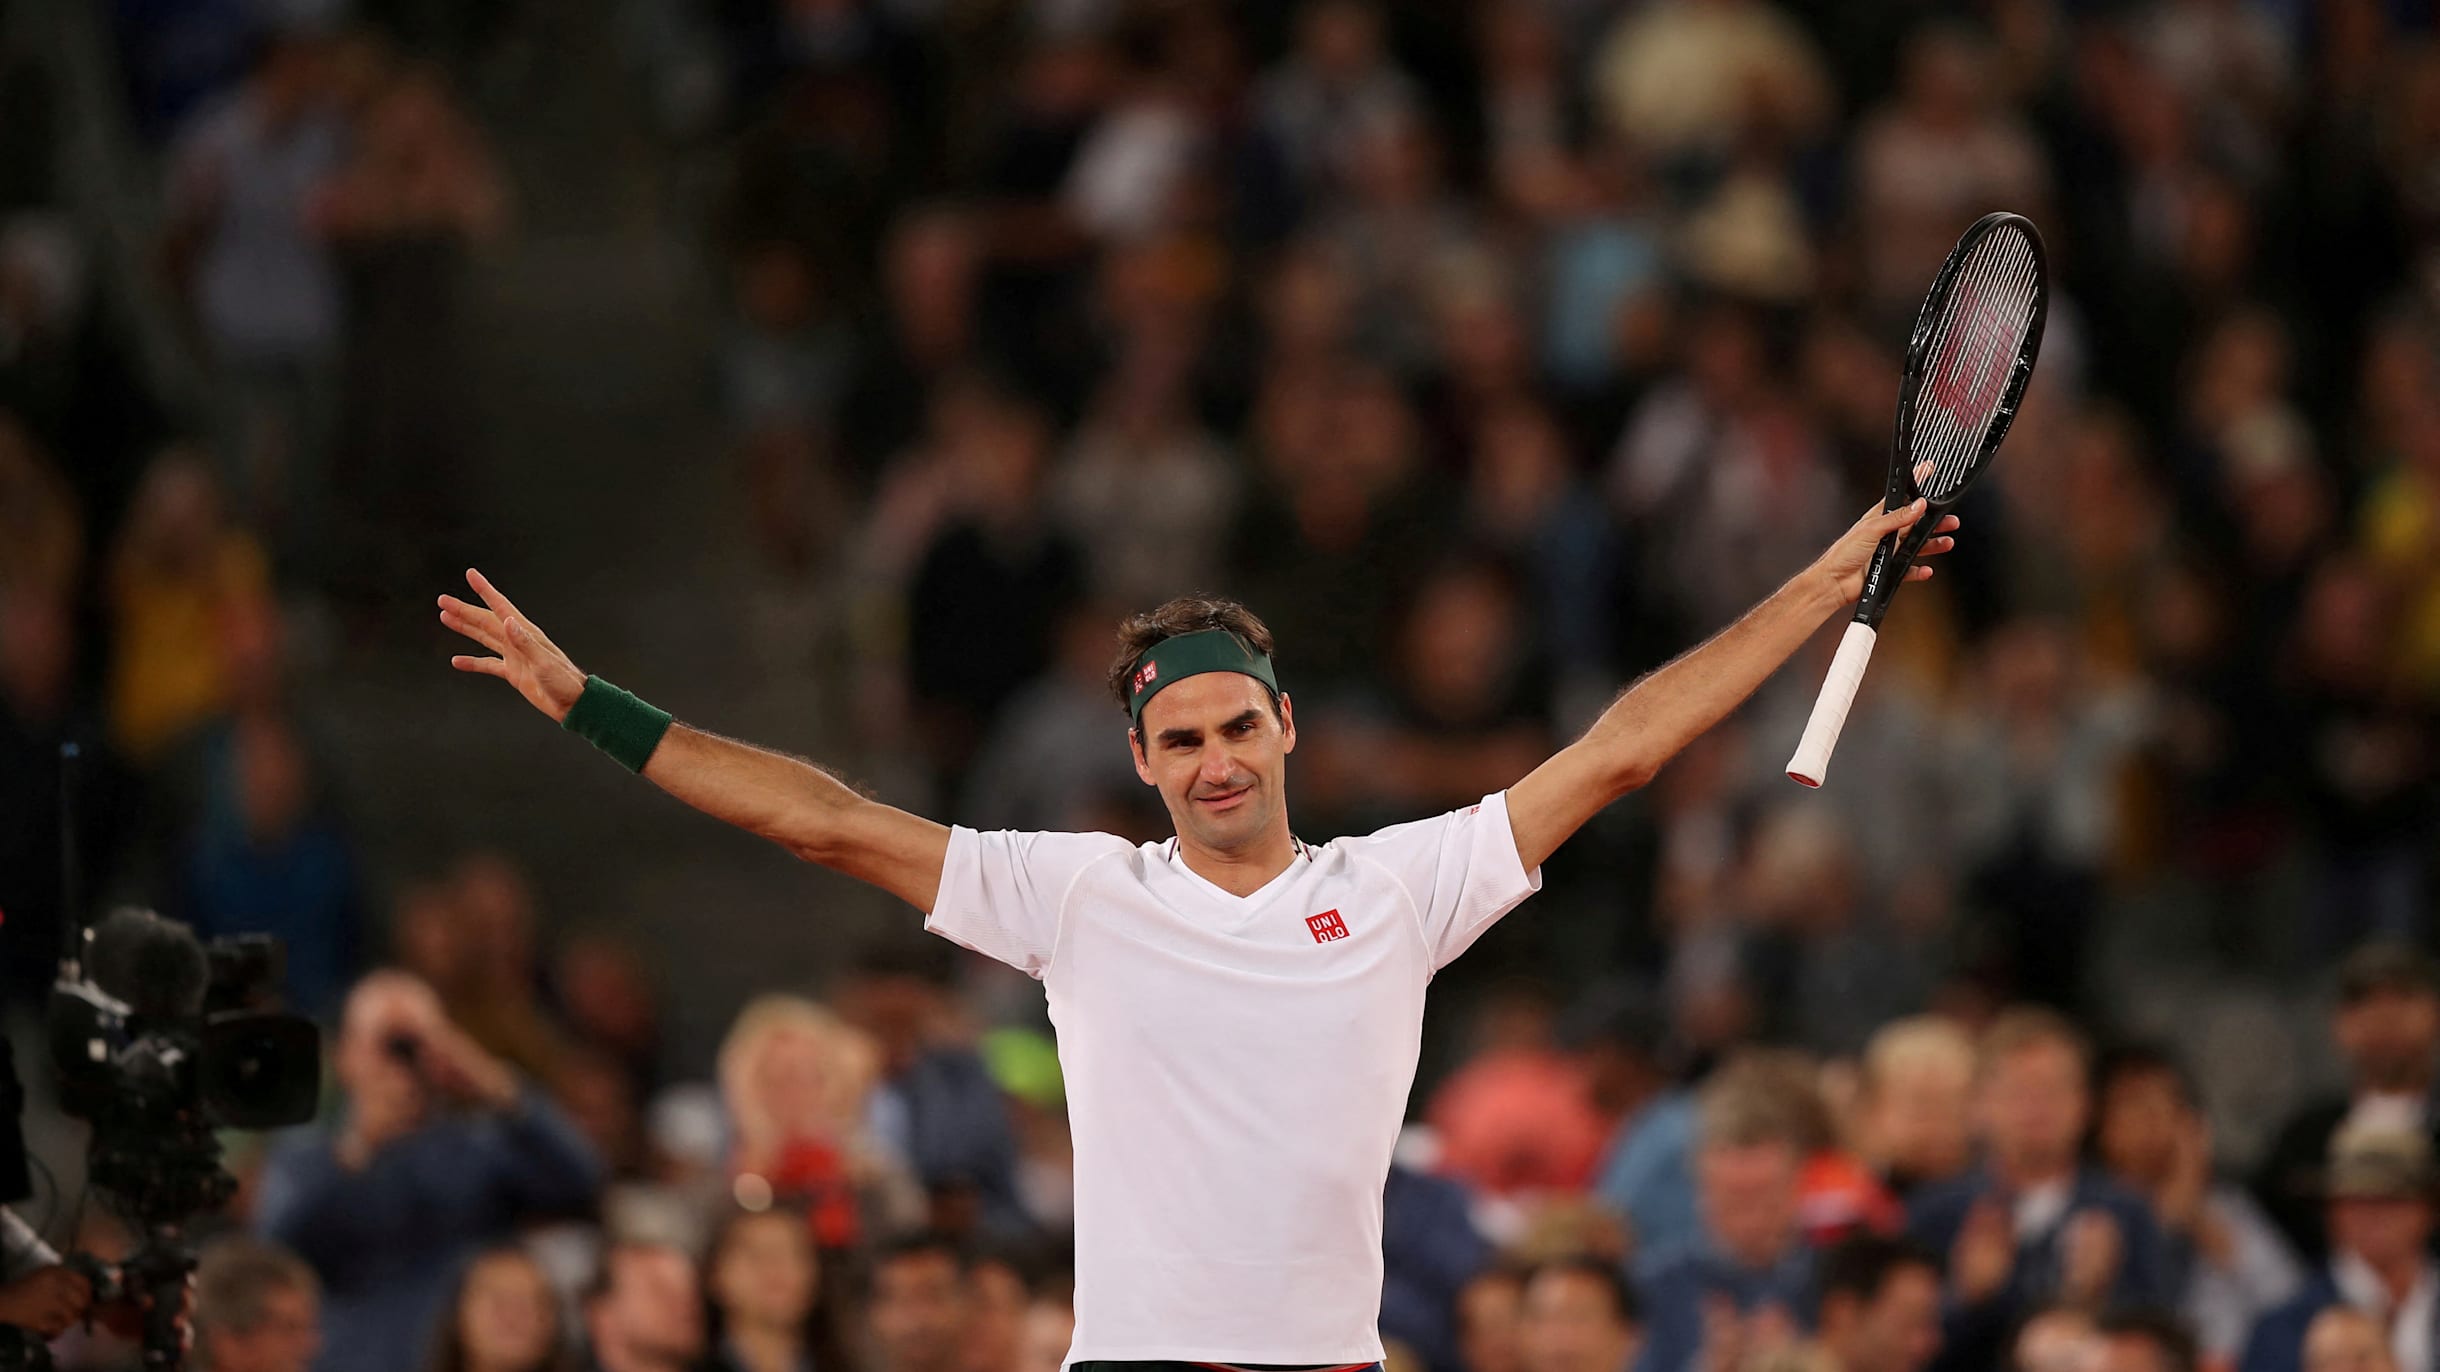 Roger Federer, o maior tenista de todos os tempos